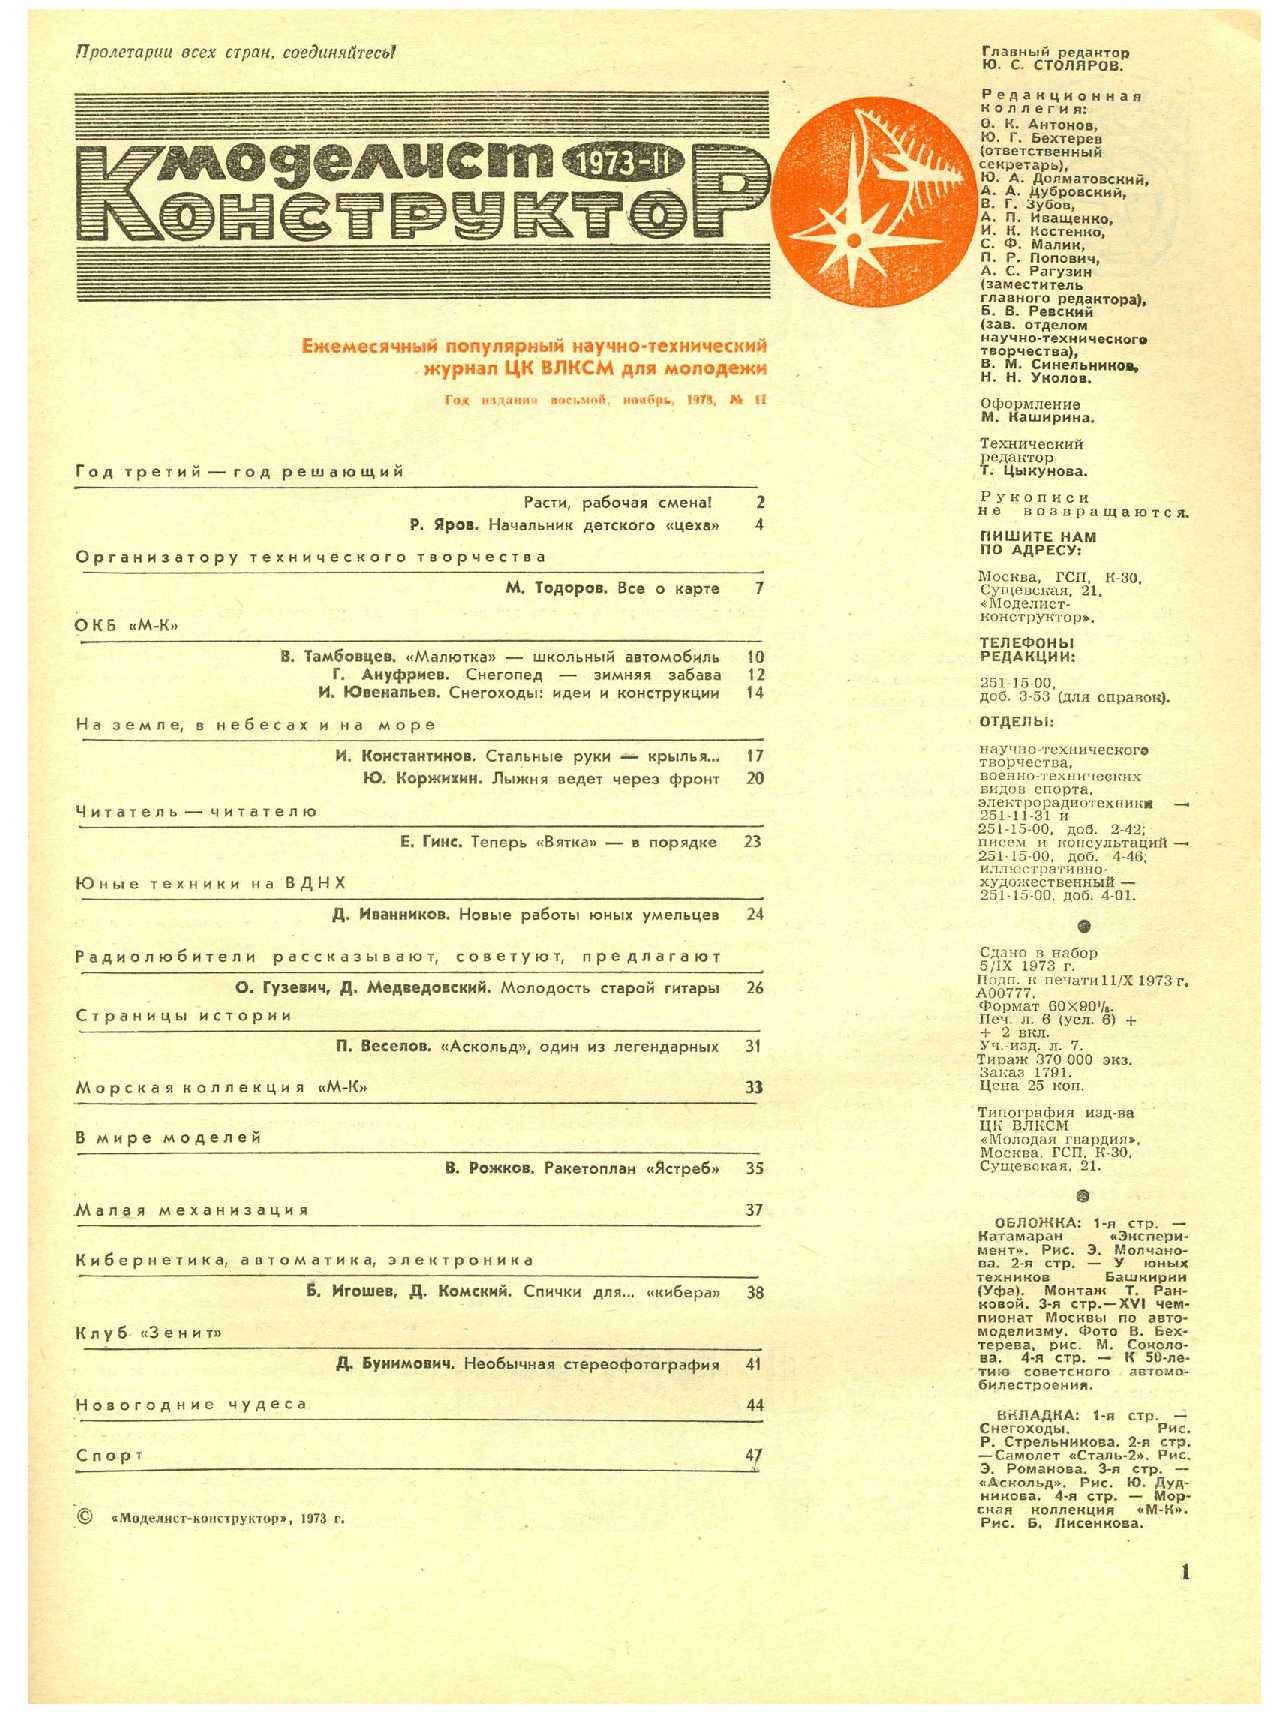 МК 11, 1973, 1 c.